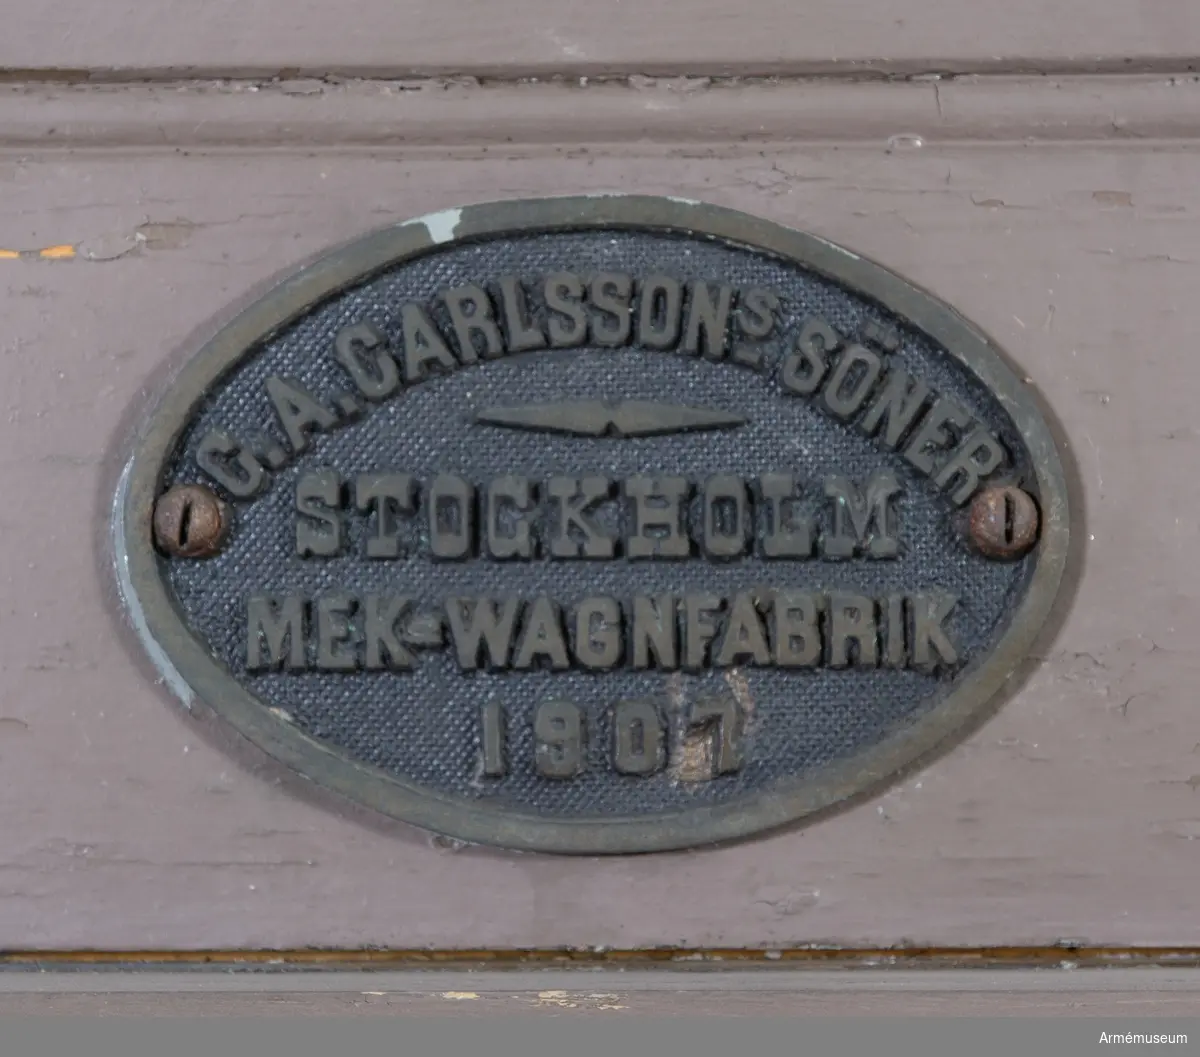 Grupp I VI.
Fältpostexpeditionsvagn. 2. Armékvarteret.
Tillv. Carlssons o Söner 1907. 
Smh svänglar, hjulmedar, m.m.
